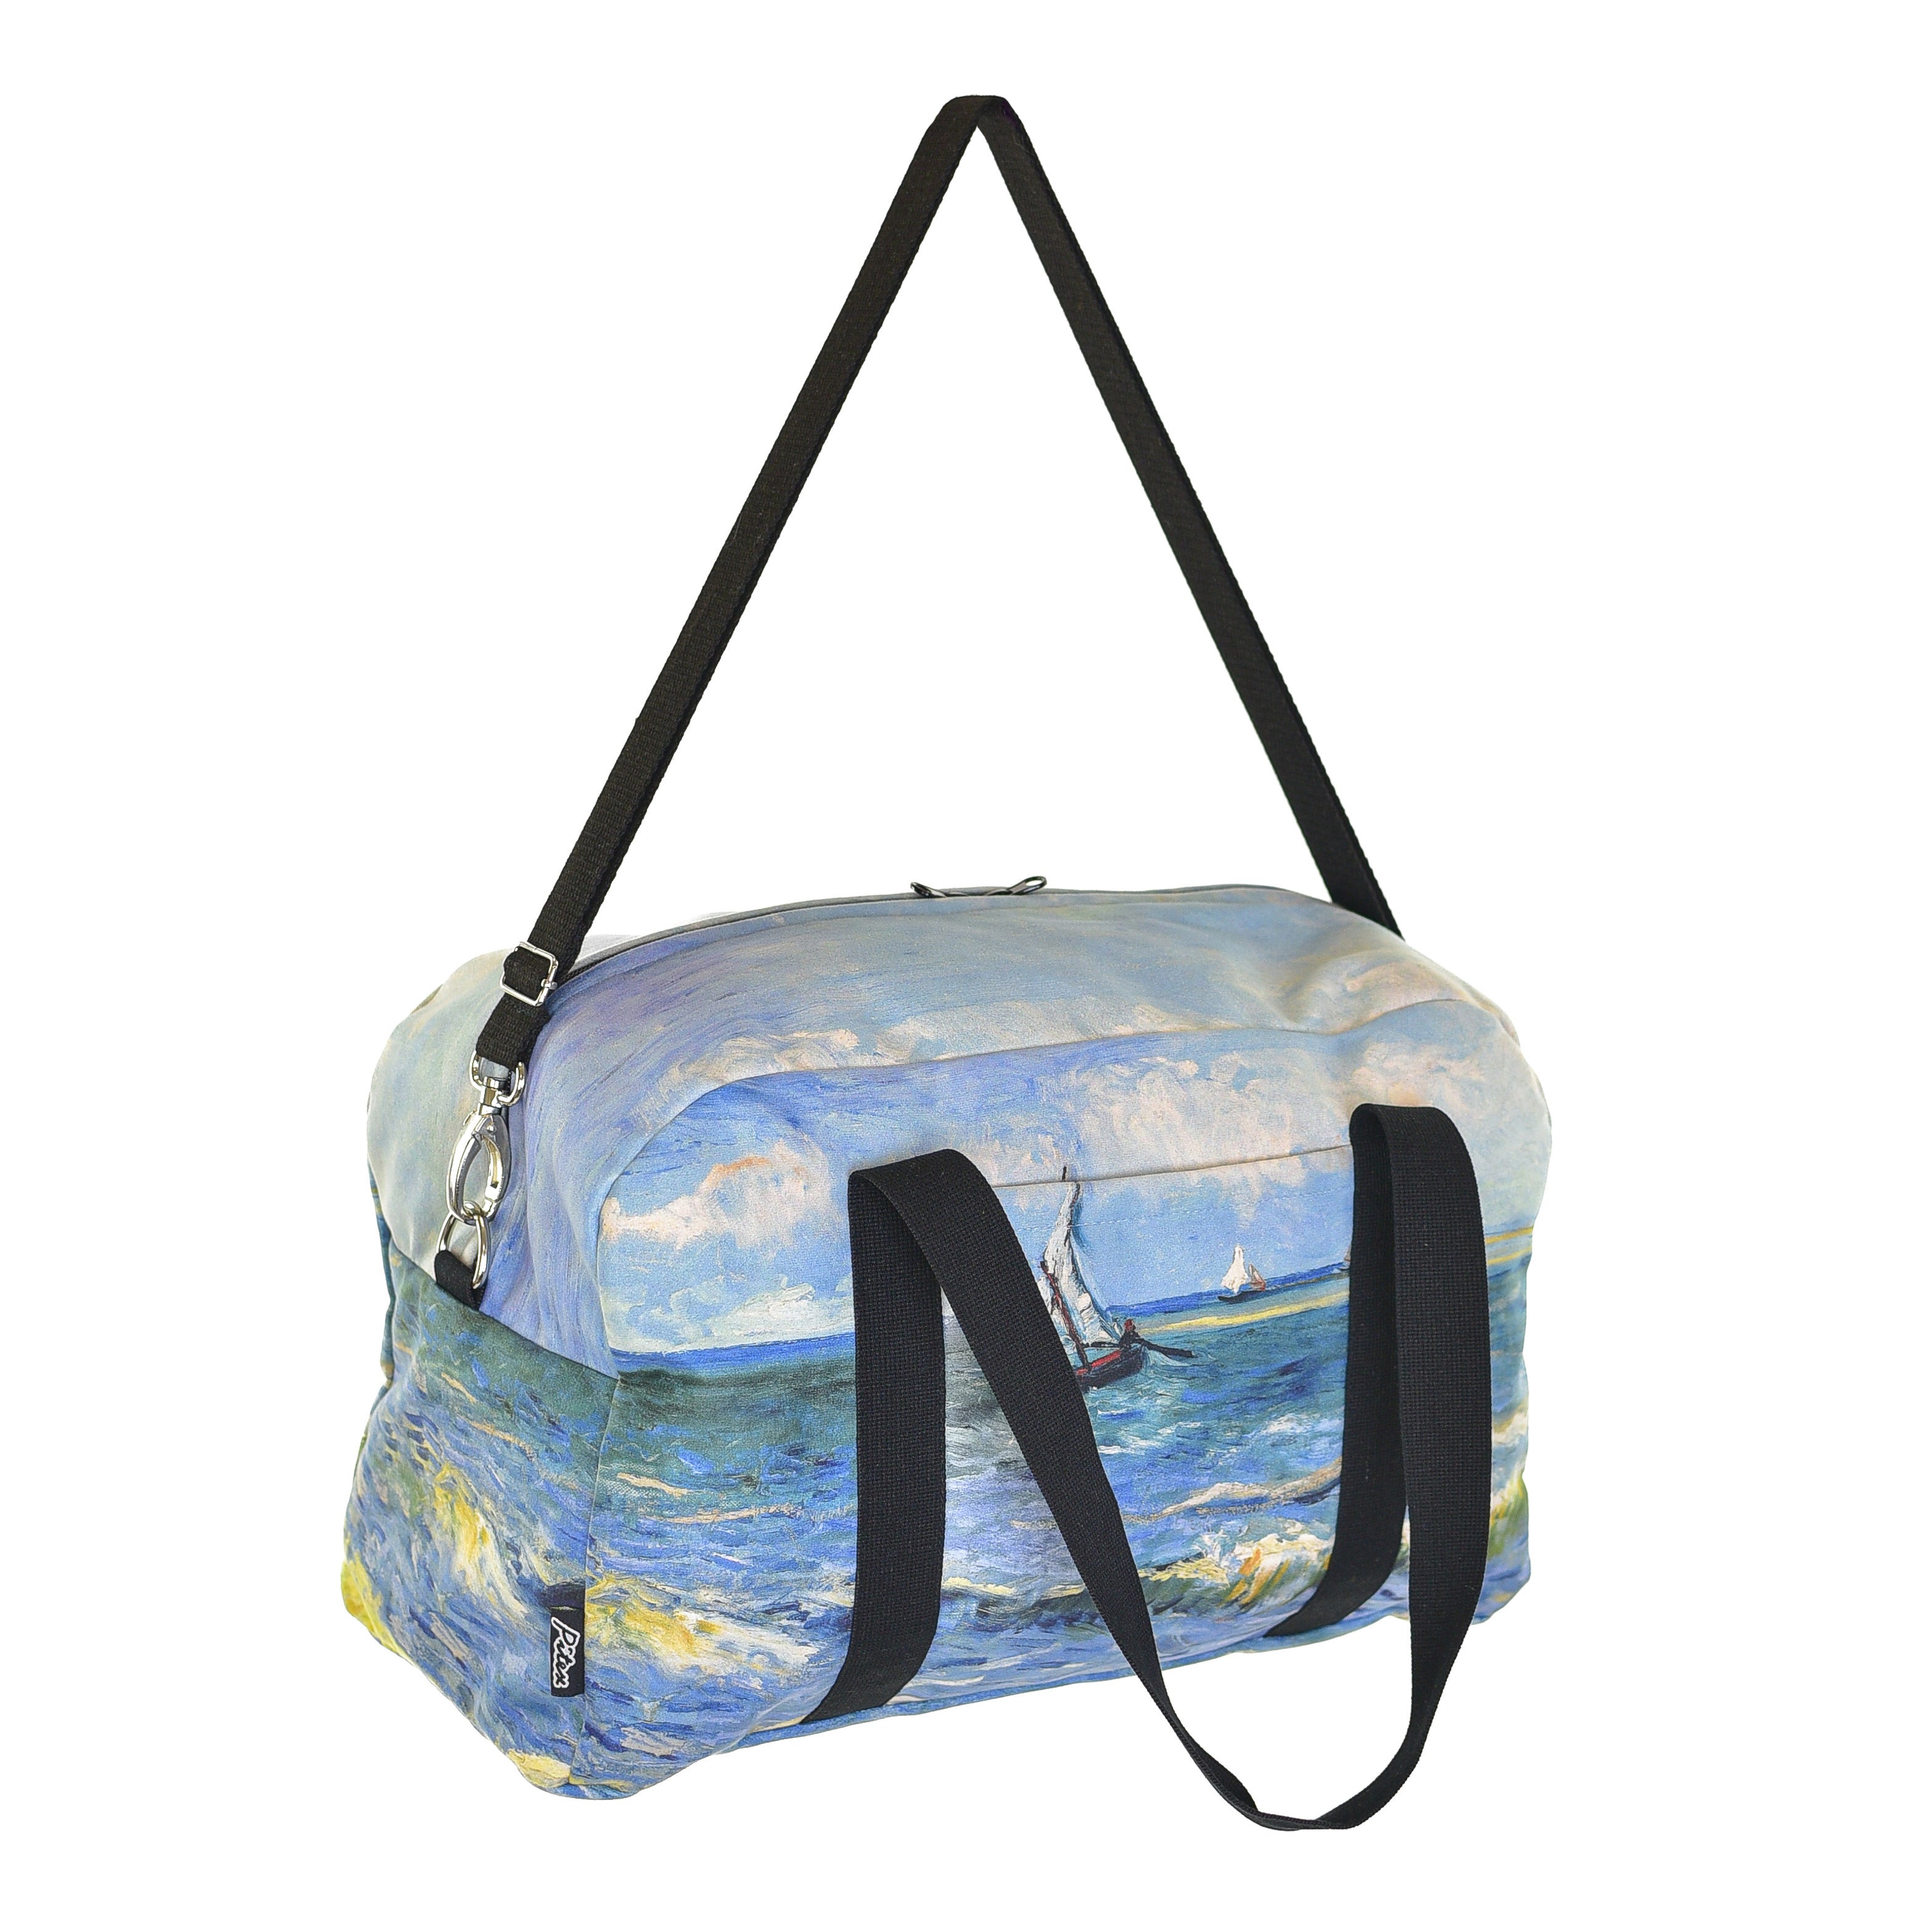 Travel / sports bag Vincent van Gogh "The Sea at Les Saintes-Maries-de-la-Mer"